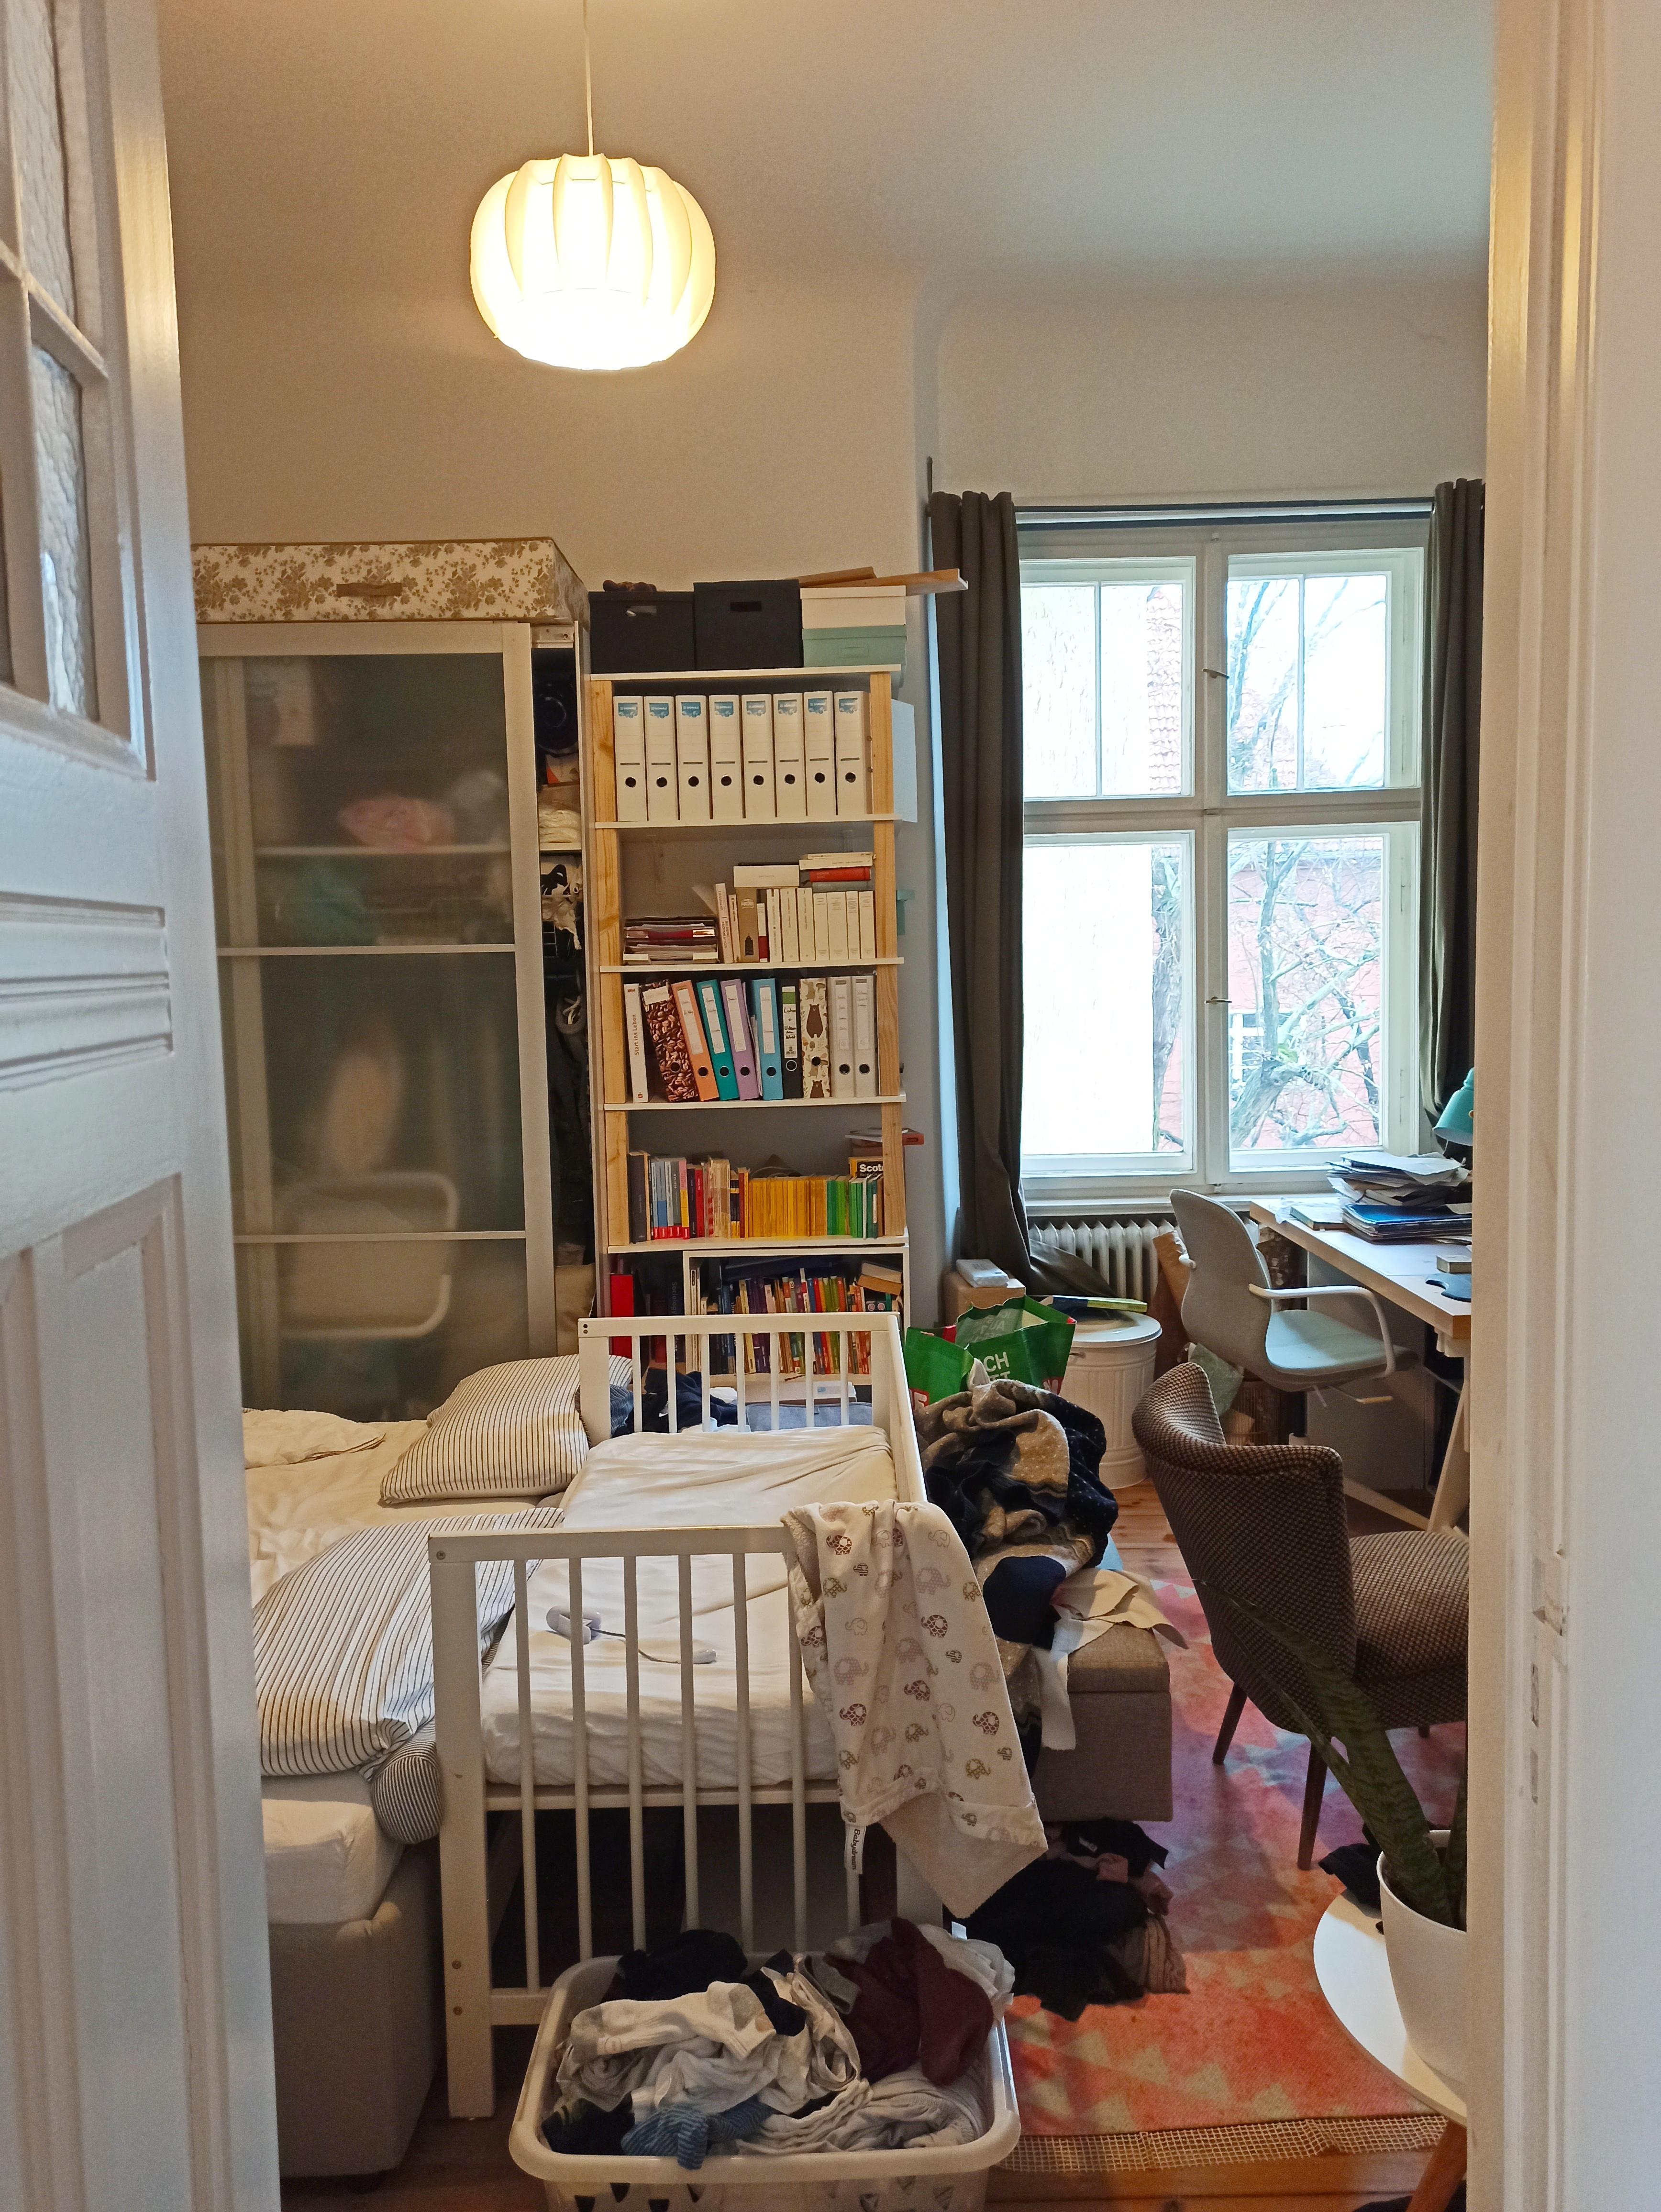 Unsere Rumpelkammer. Ach nee, Schlaf-, Baby- und Arbeitszimmer 😅 #Schlafzimmer #Baby #Zwillinge